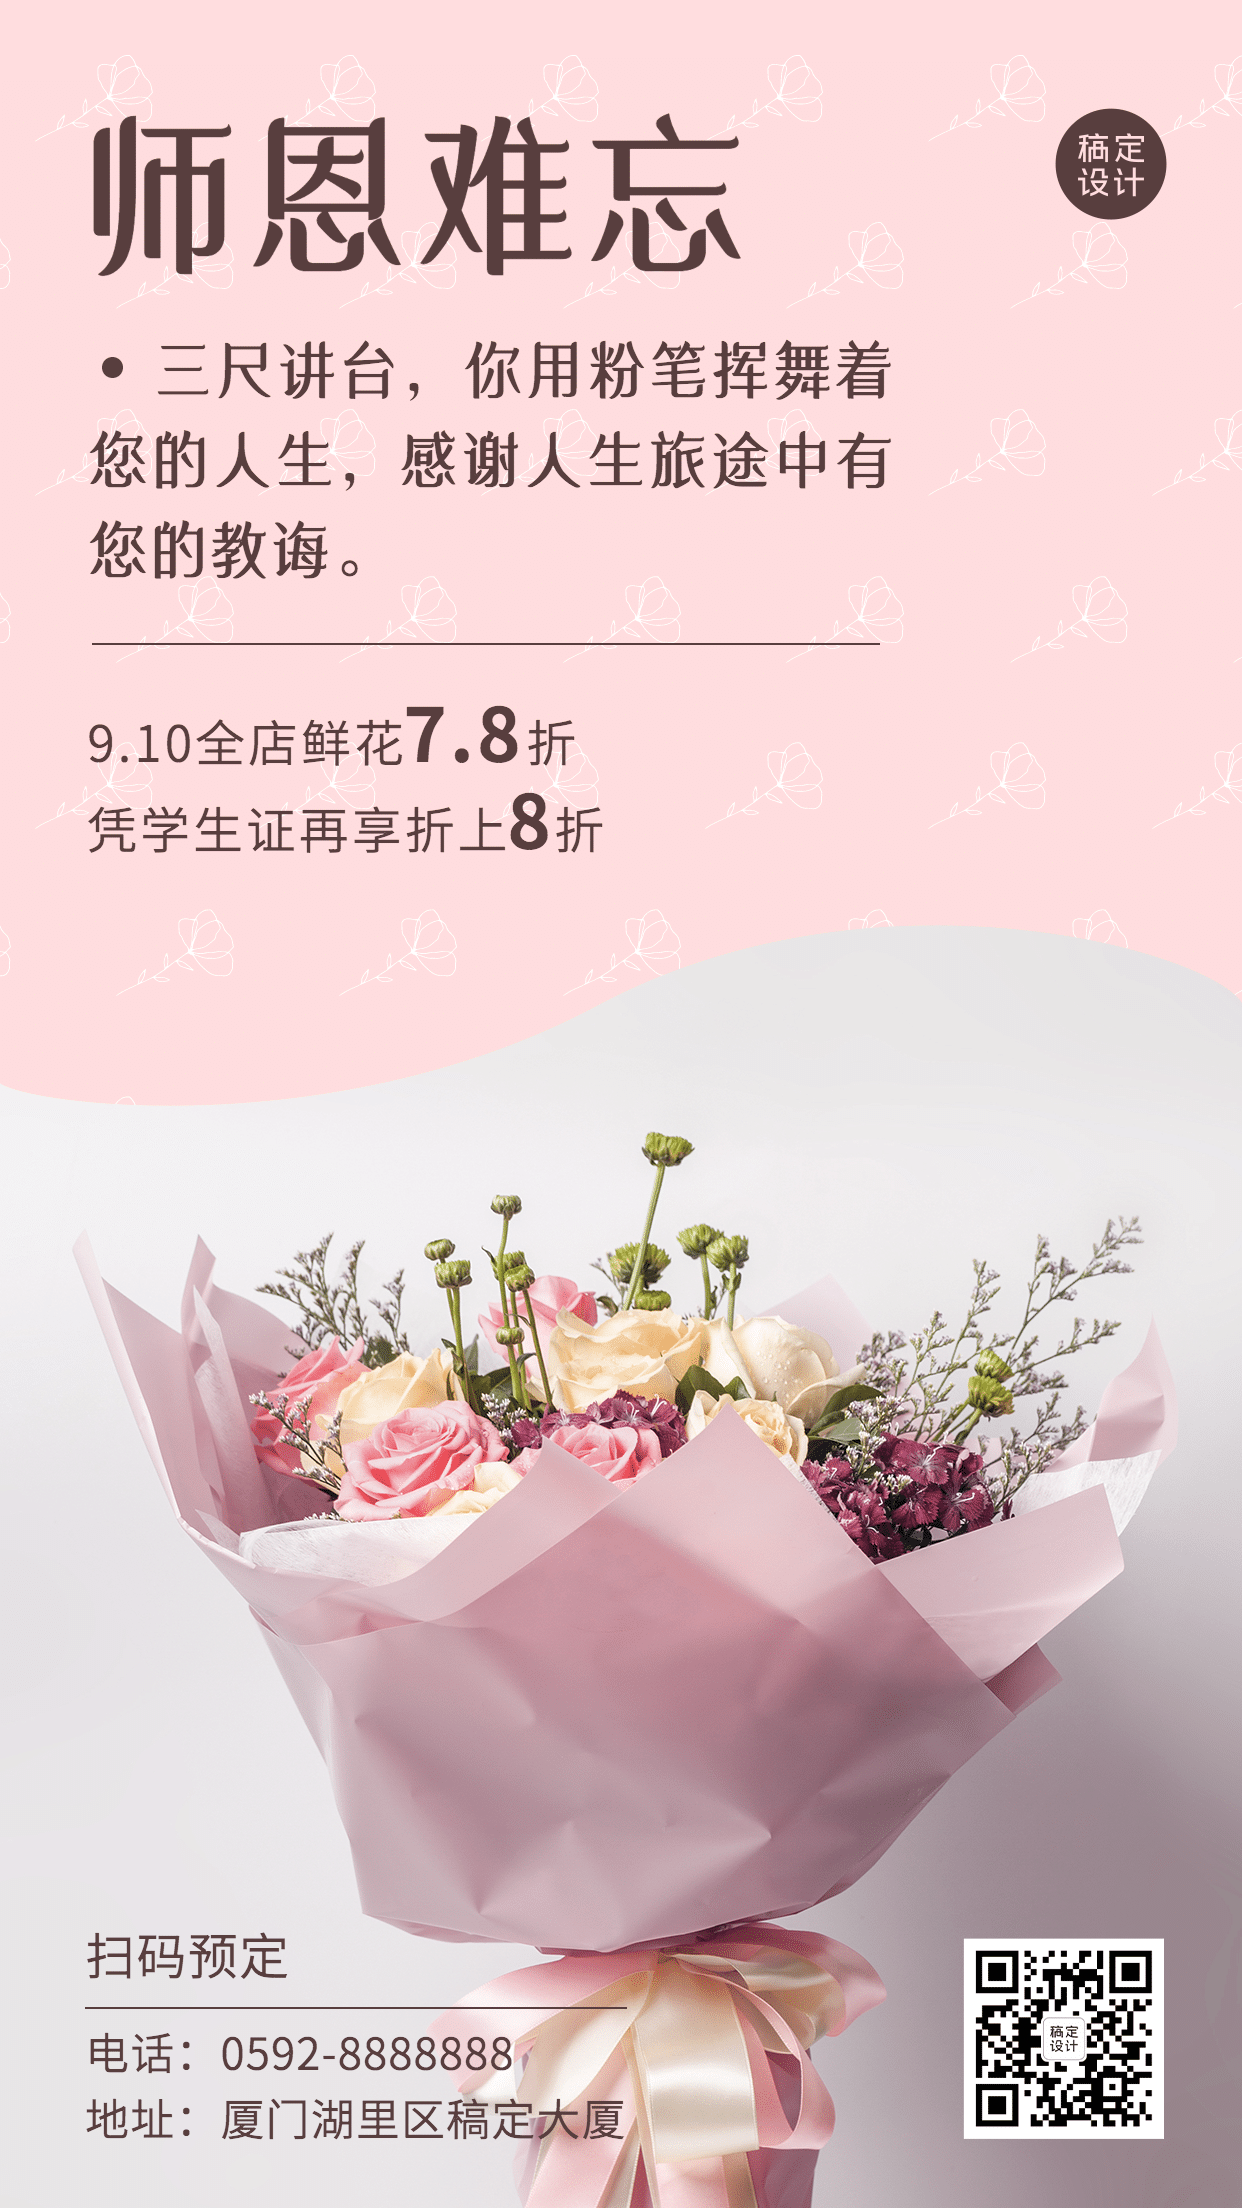 教师节鲜花献礼产品展示手机海报